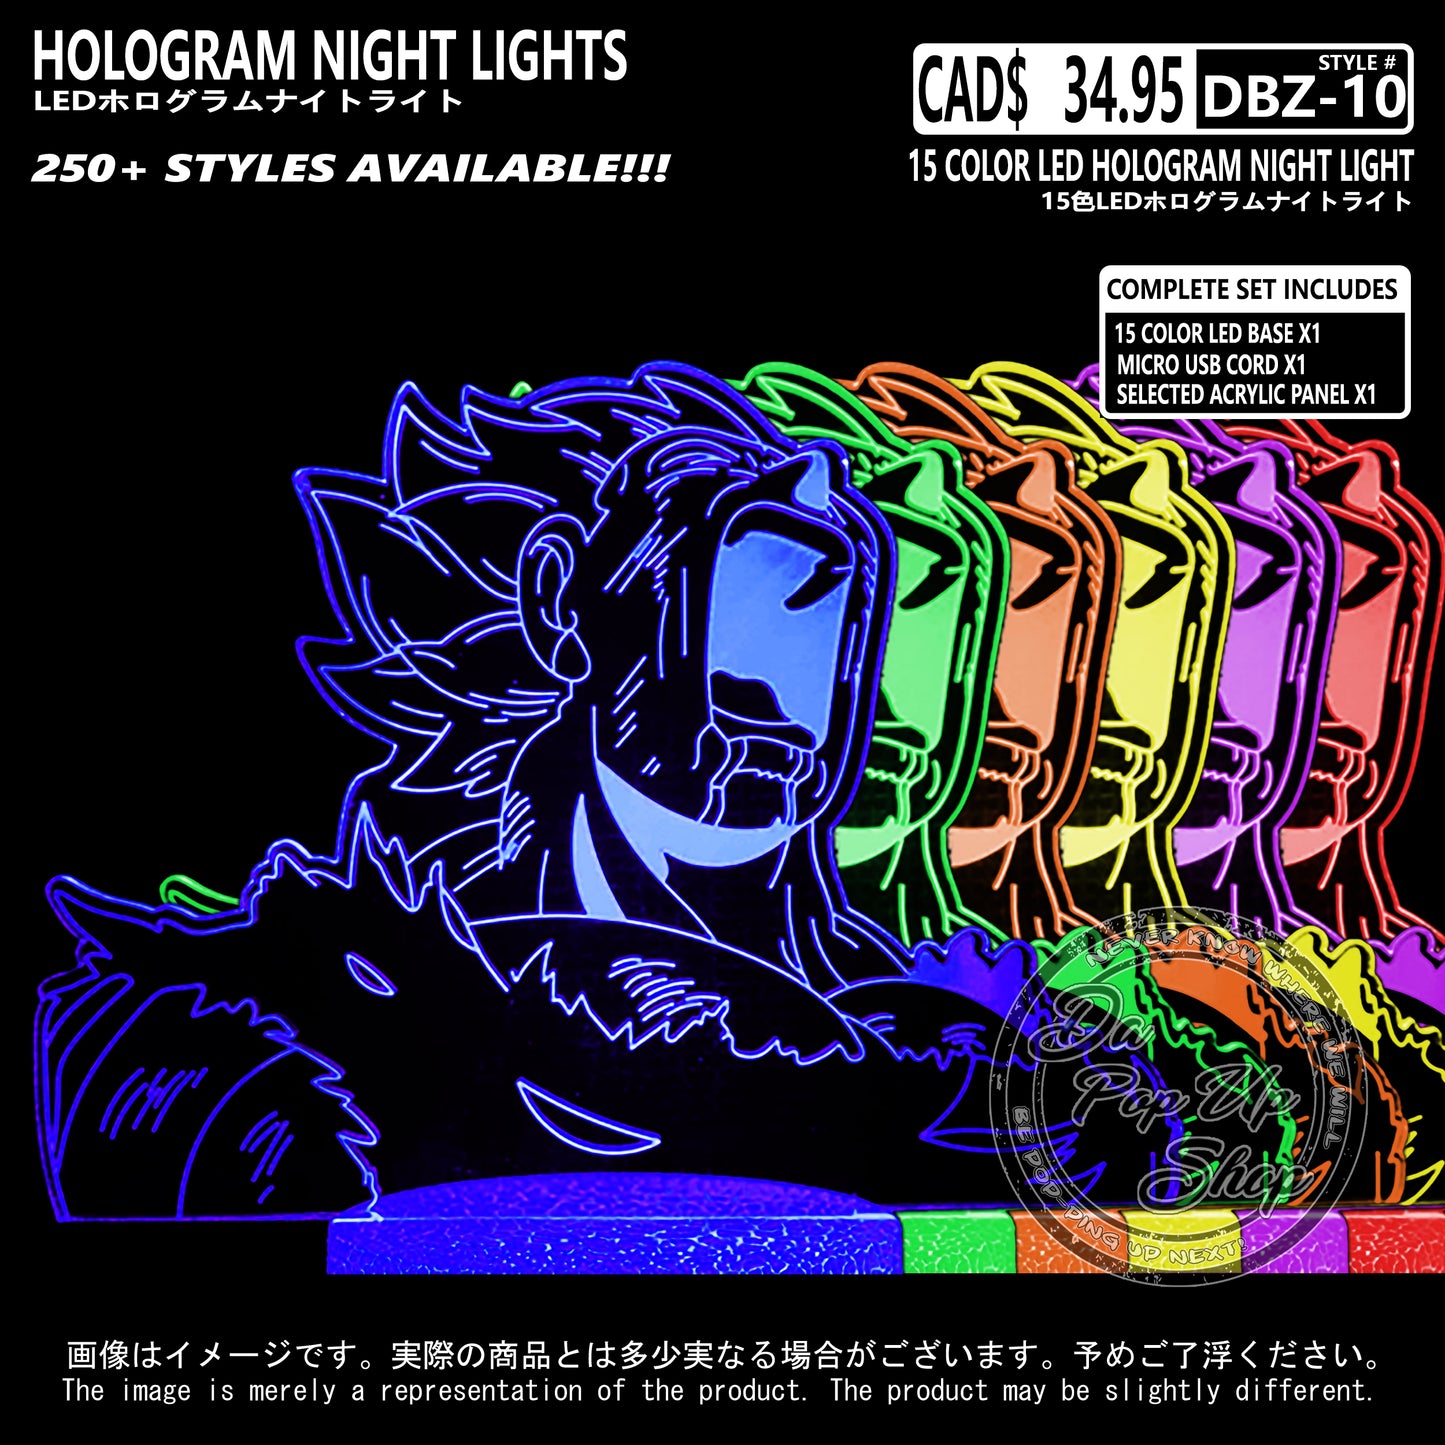 (DBZ-10) Dragon Ball Z Hologram LED Night Light